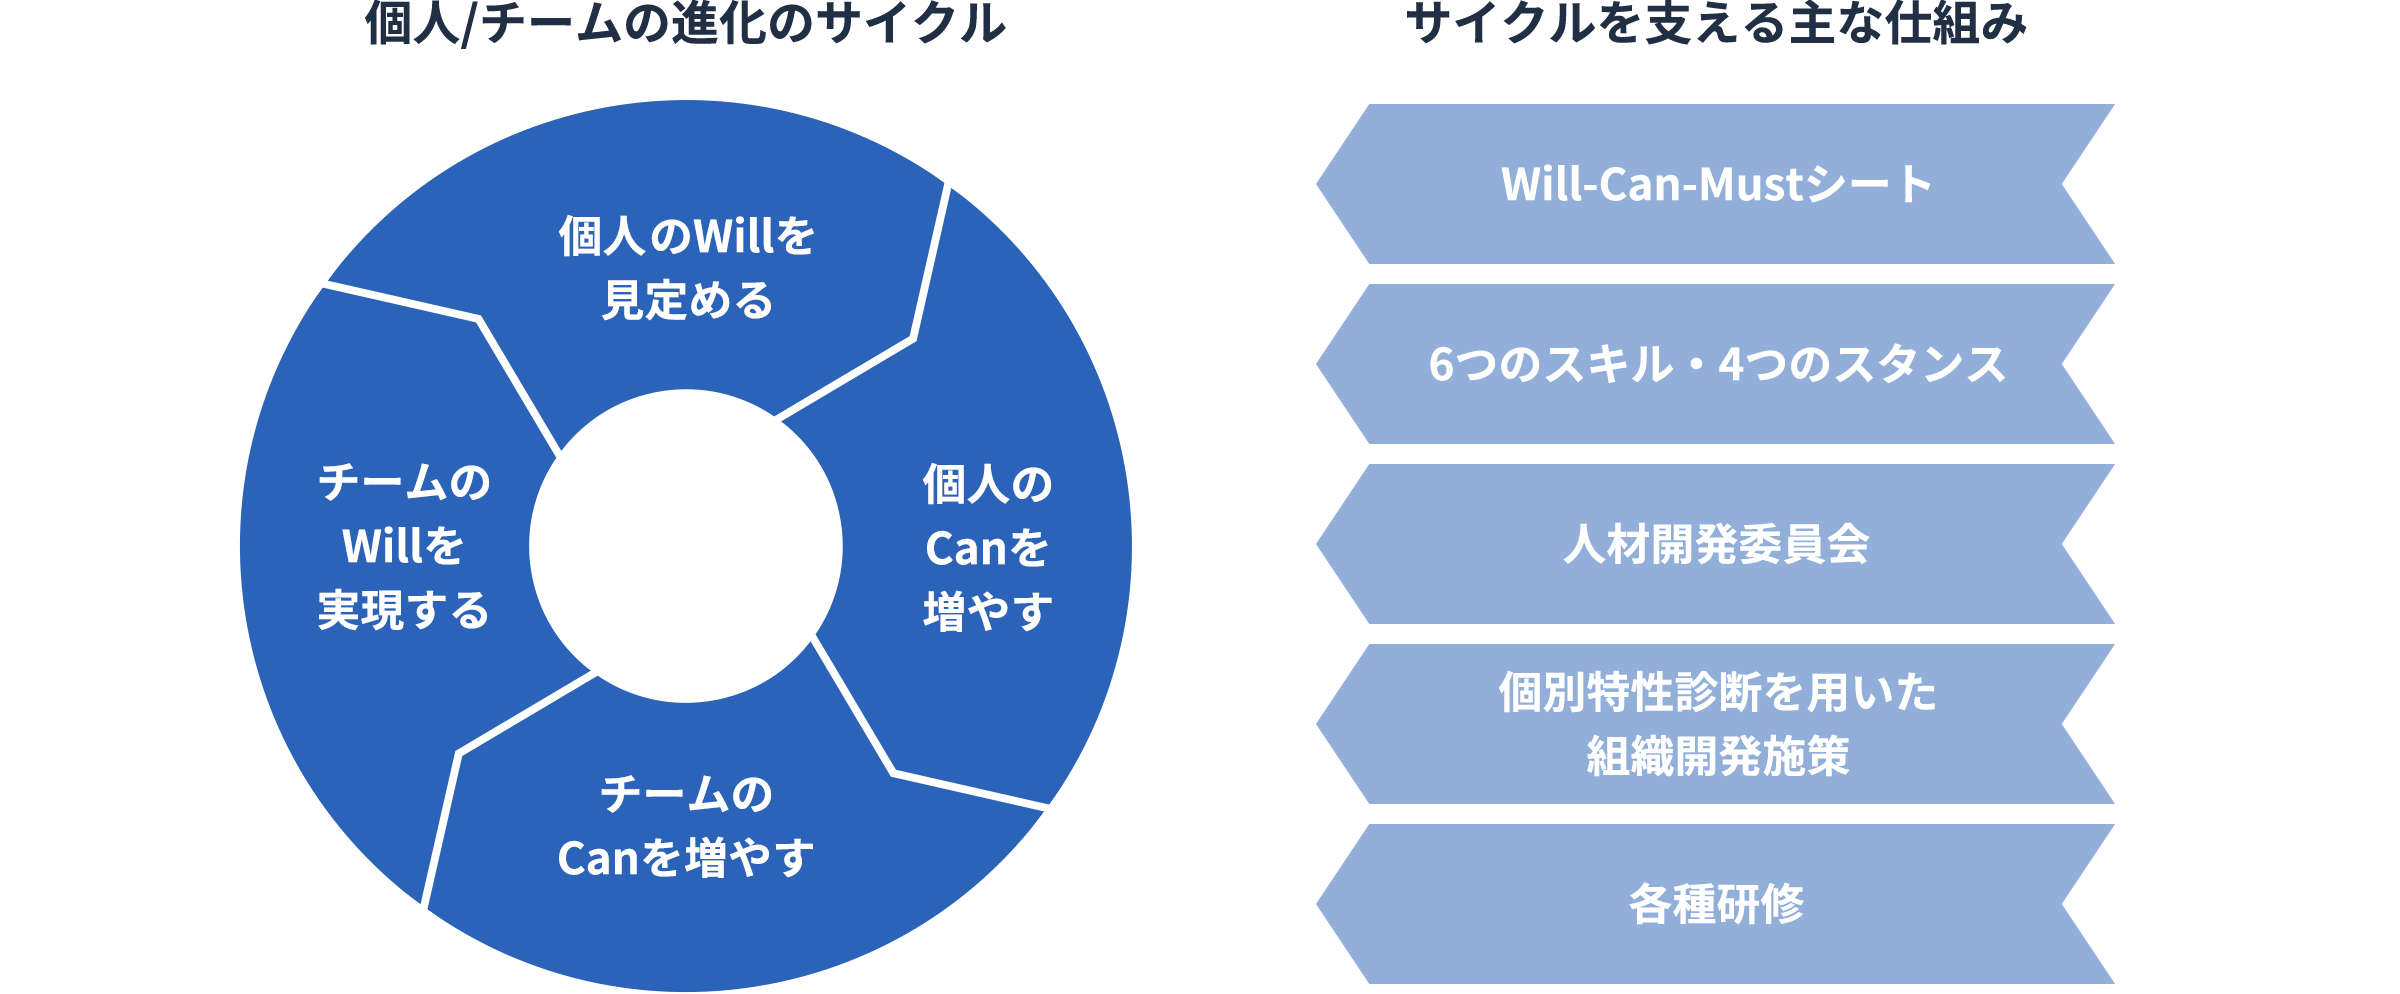 個人のWillを見定め、個人のCanを増やすことで、チームのCanを増やすことに繋がり、結果としてチームのWillが実現する。これを個人／チームの進化のサイクルと定義しています。サイクルを支える仕組みとして、Will-Can-Mustシート、6つのスキル・4つのスタンス、人材開発委員会、個別特性診断を用いた組織開発施策、各種研修を設けています。